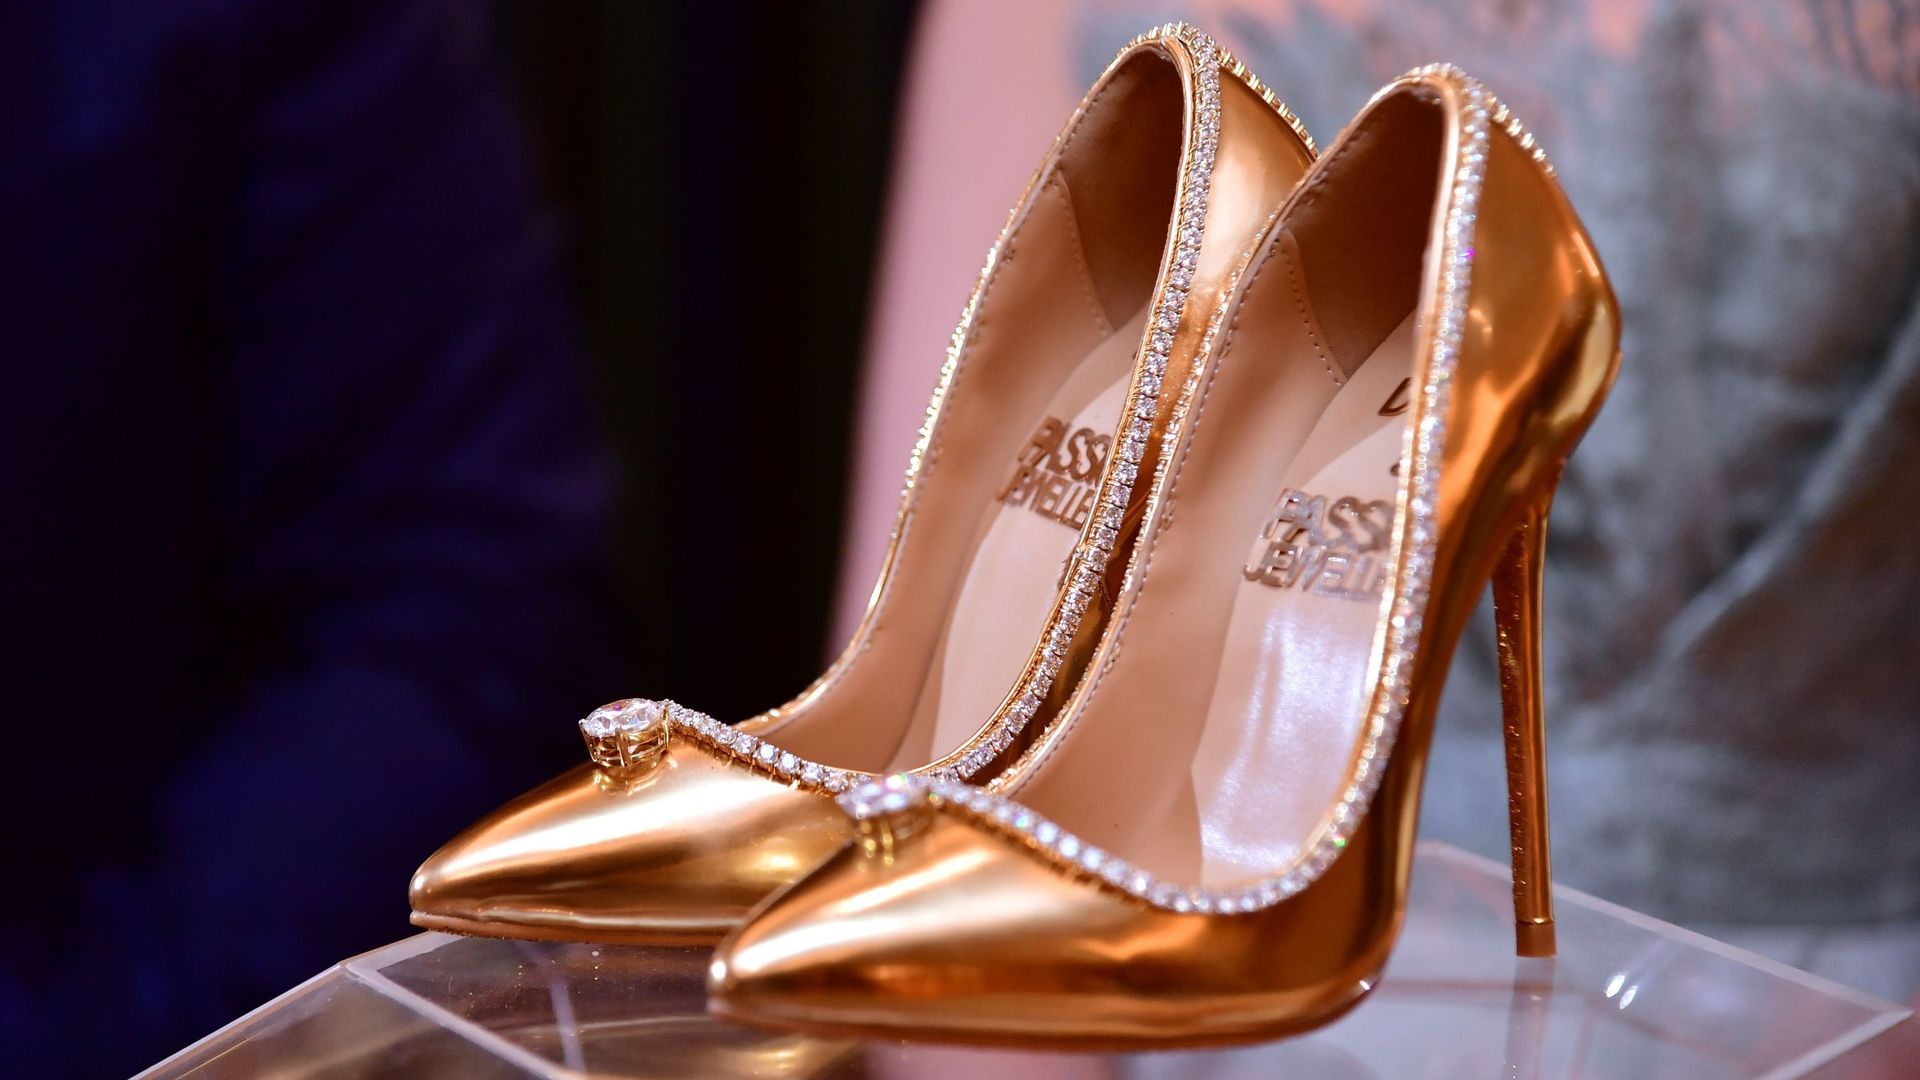 Une paire de chaussures, faite de cuir, de soie, d'or et de diamants, est proposée à la vente à Dubaï pour la somme de 17 millions de dollars, un record absolu, selon les organisateurs.